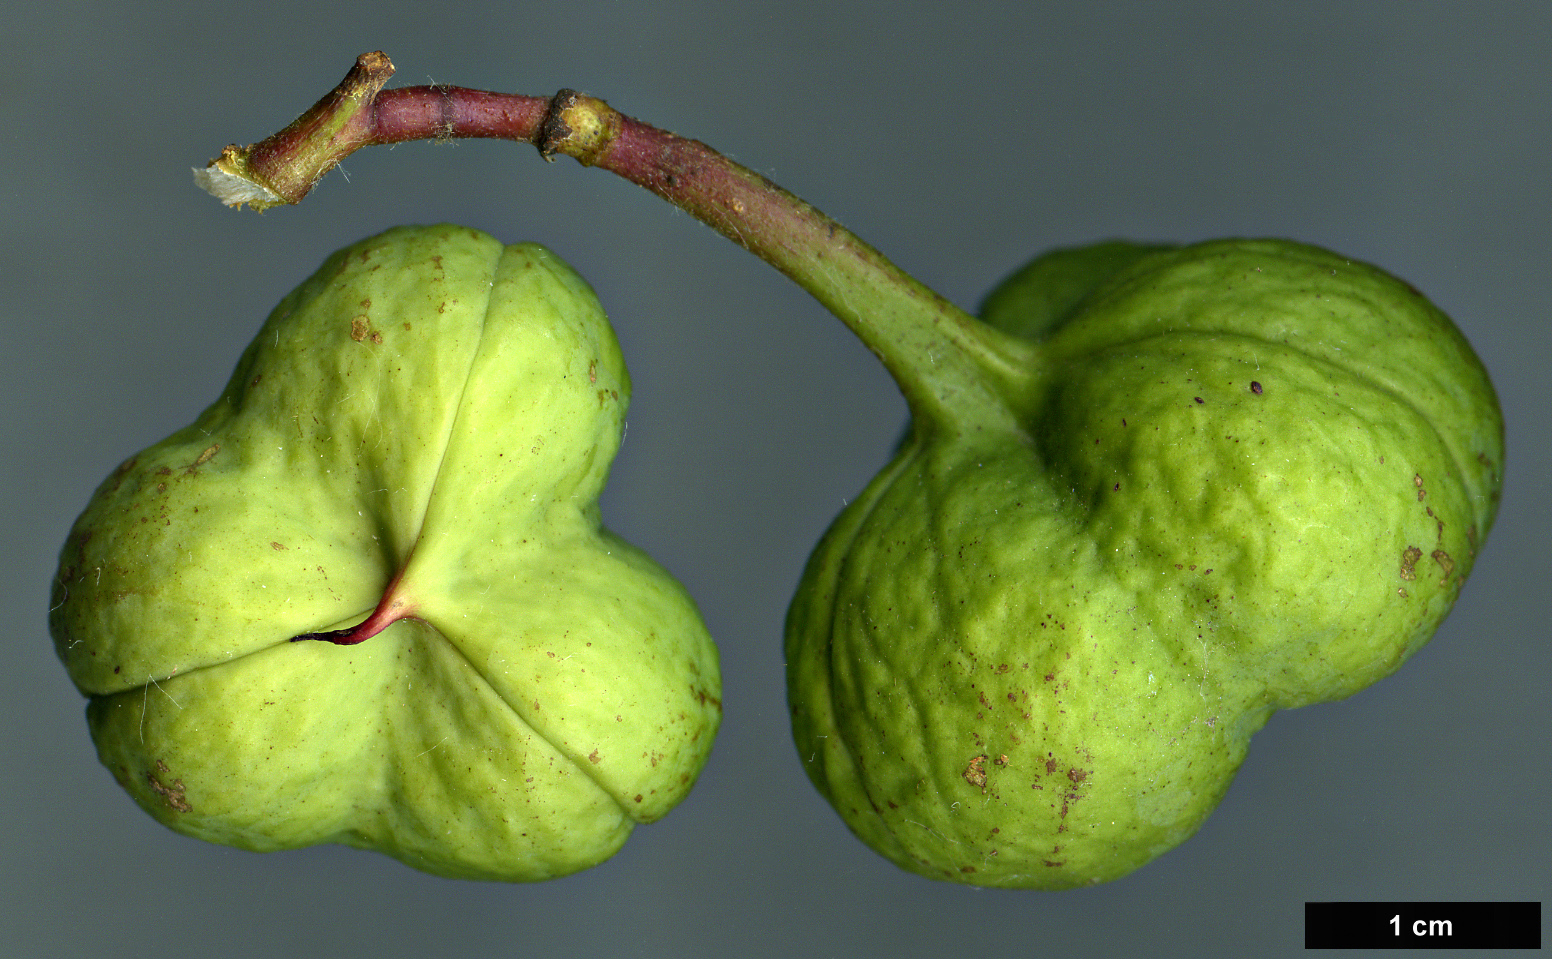 High resolution image: Family: Sapindaceae - Genus: Ungnadia - Taxon: speciosa